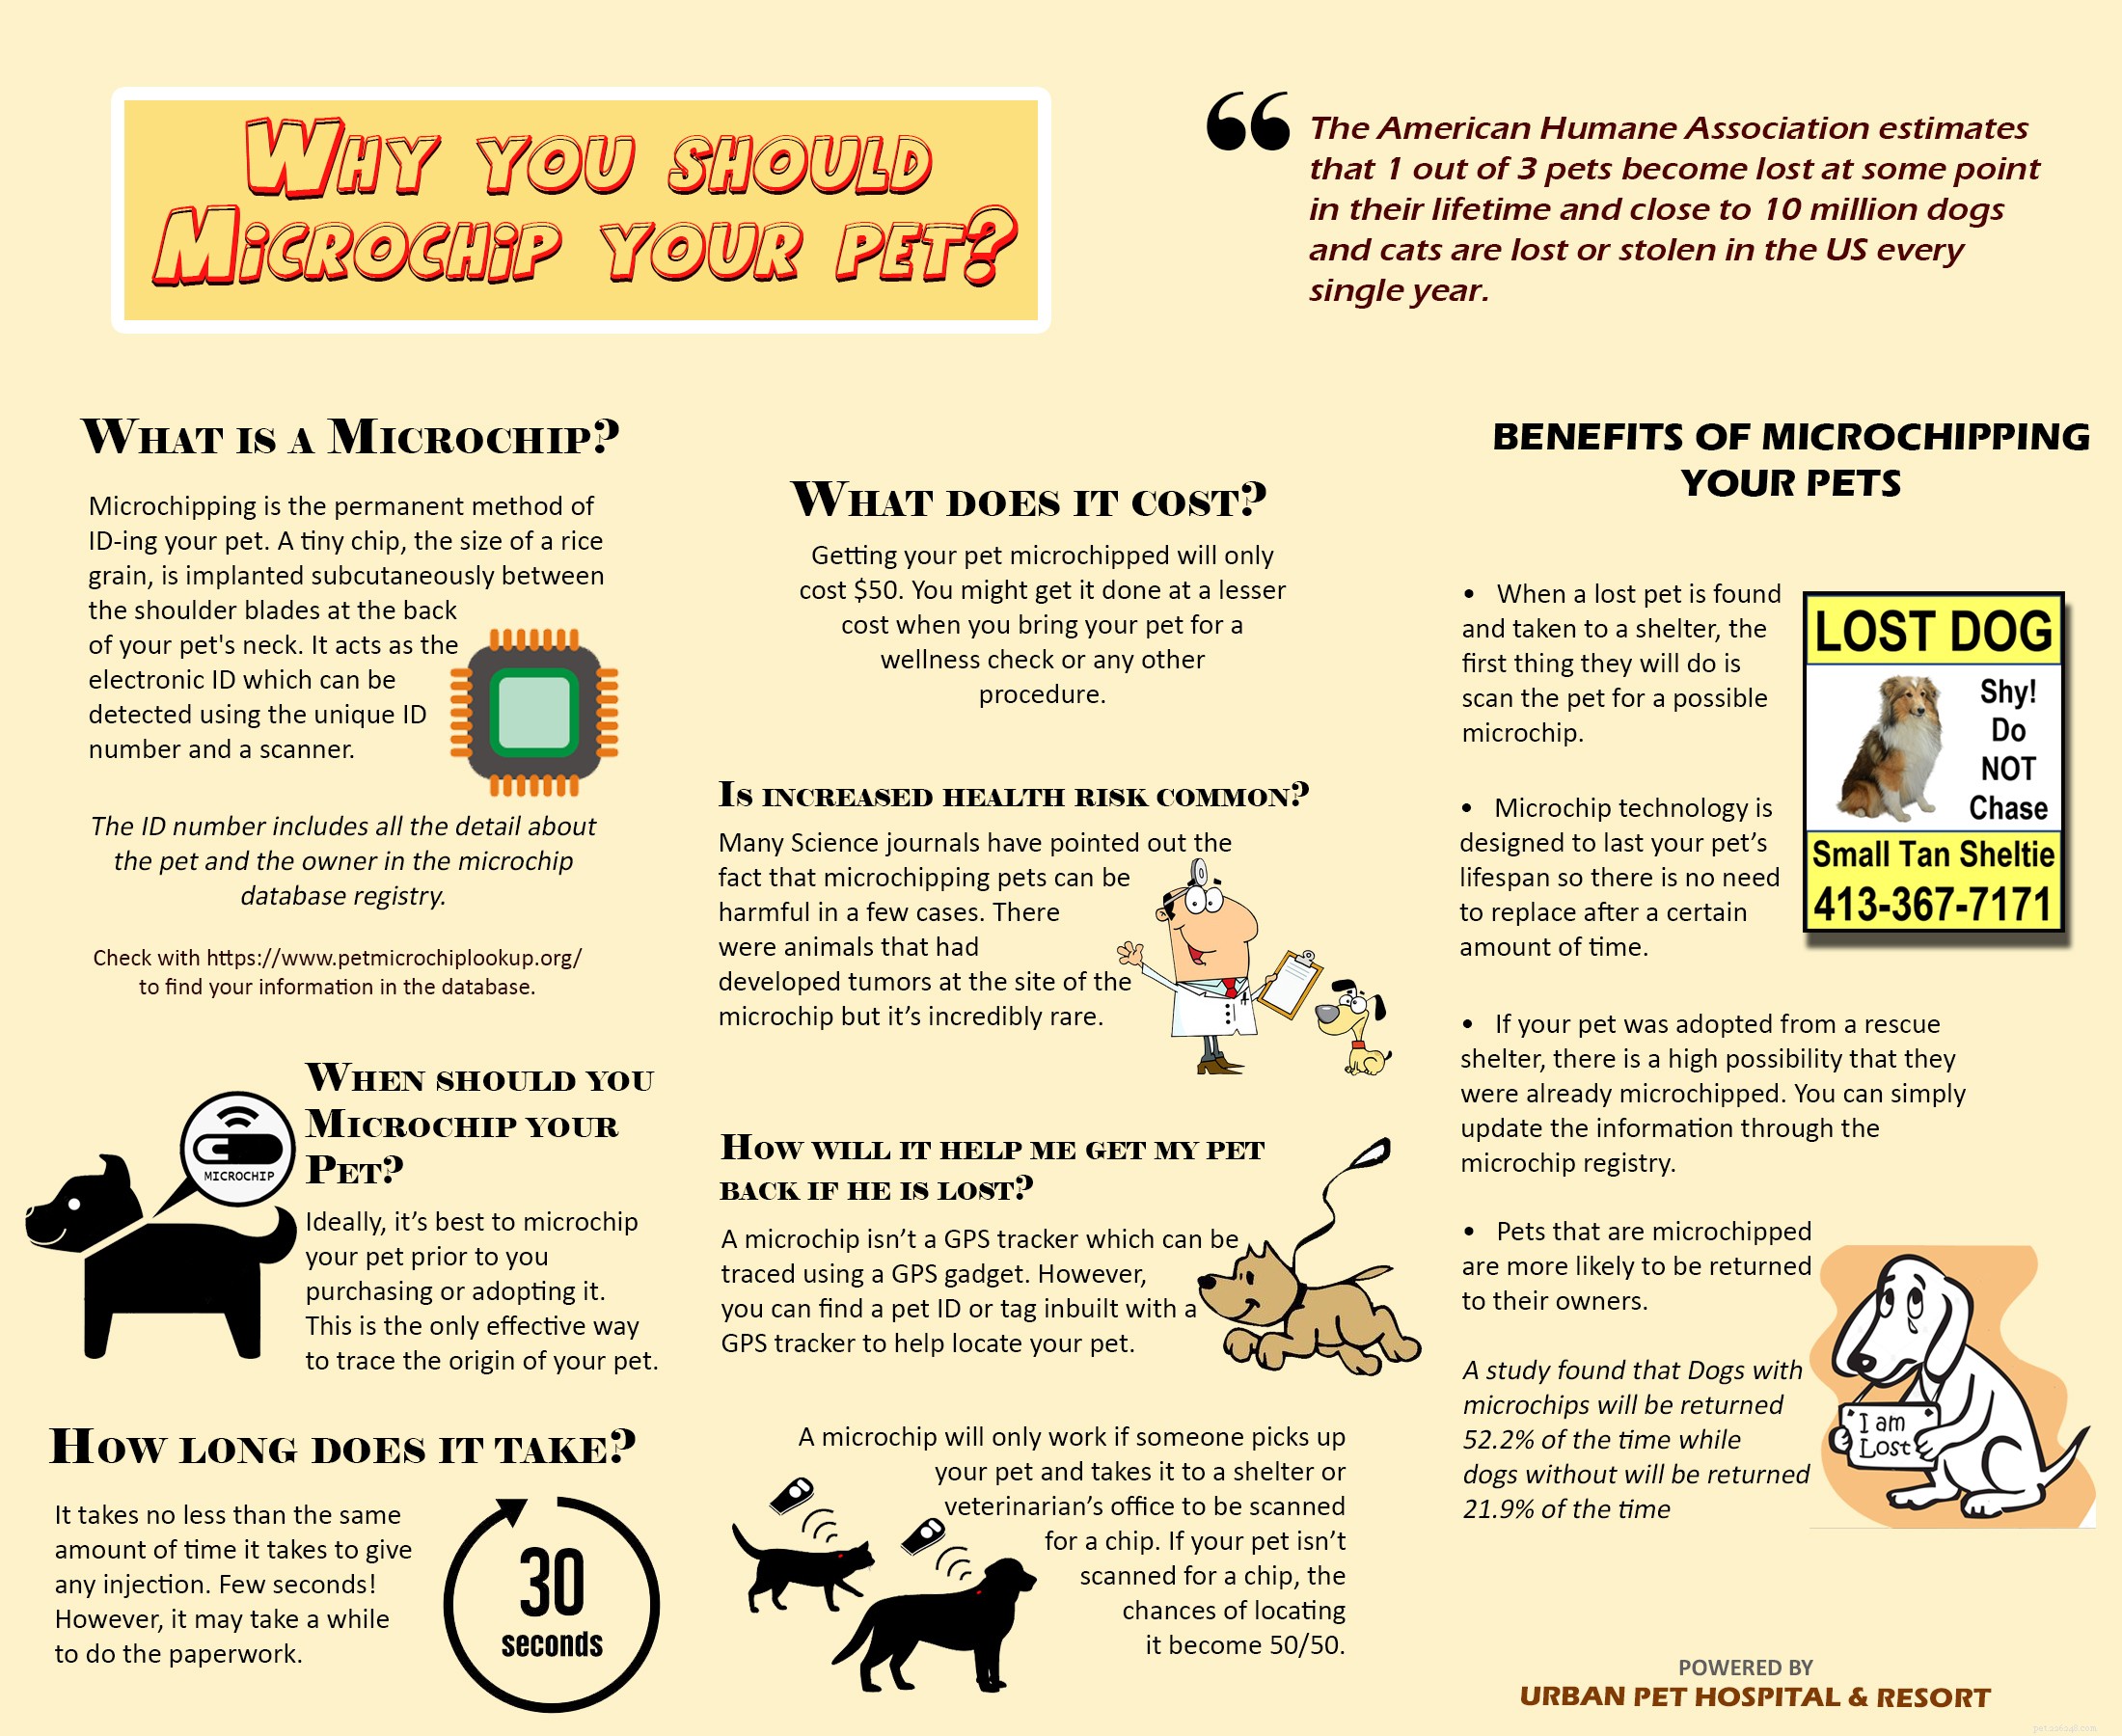 애완동물을 마이크로칩해야 하는 이유는 무엇입니까?